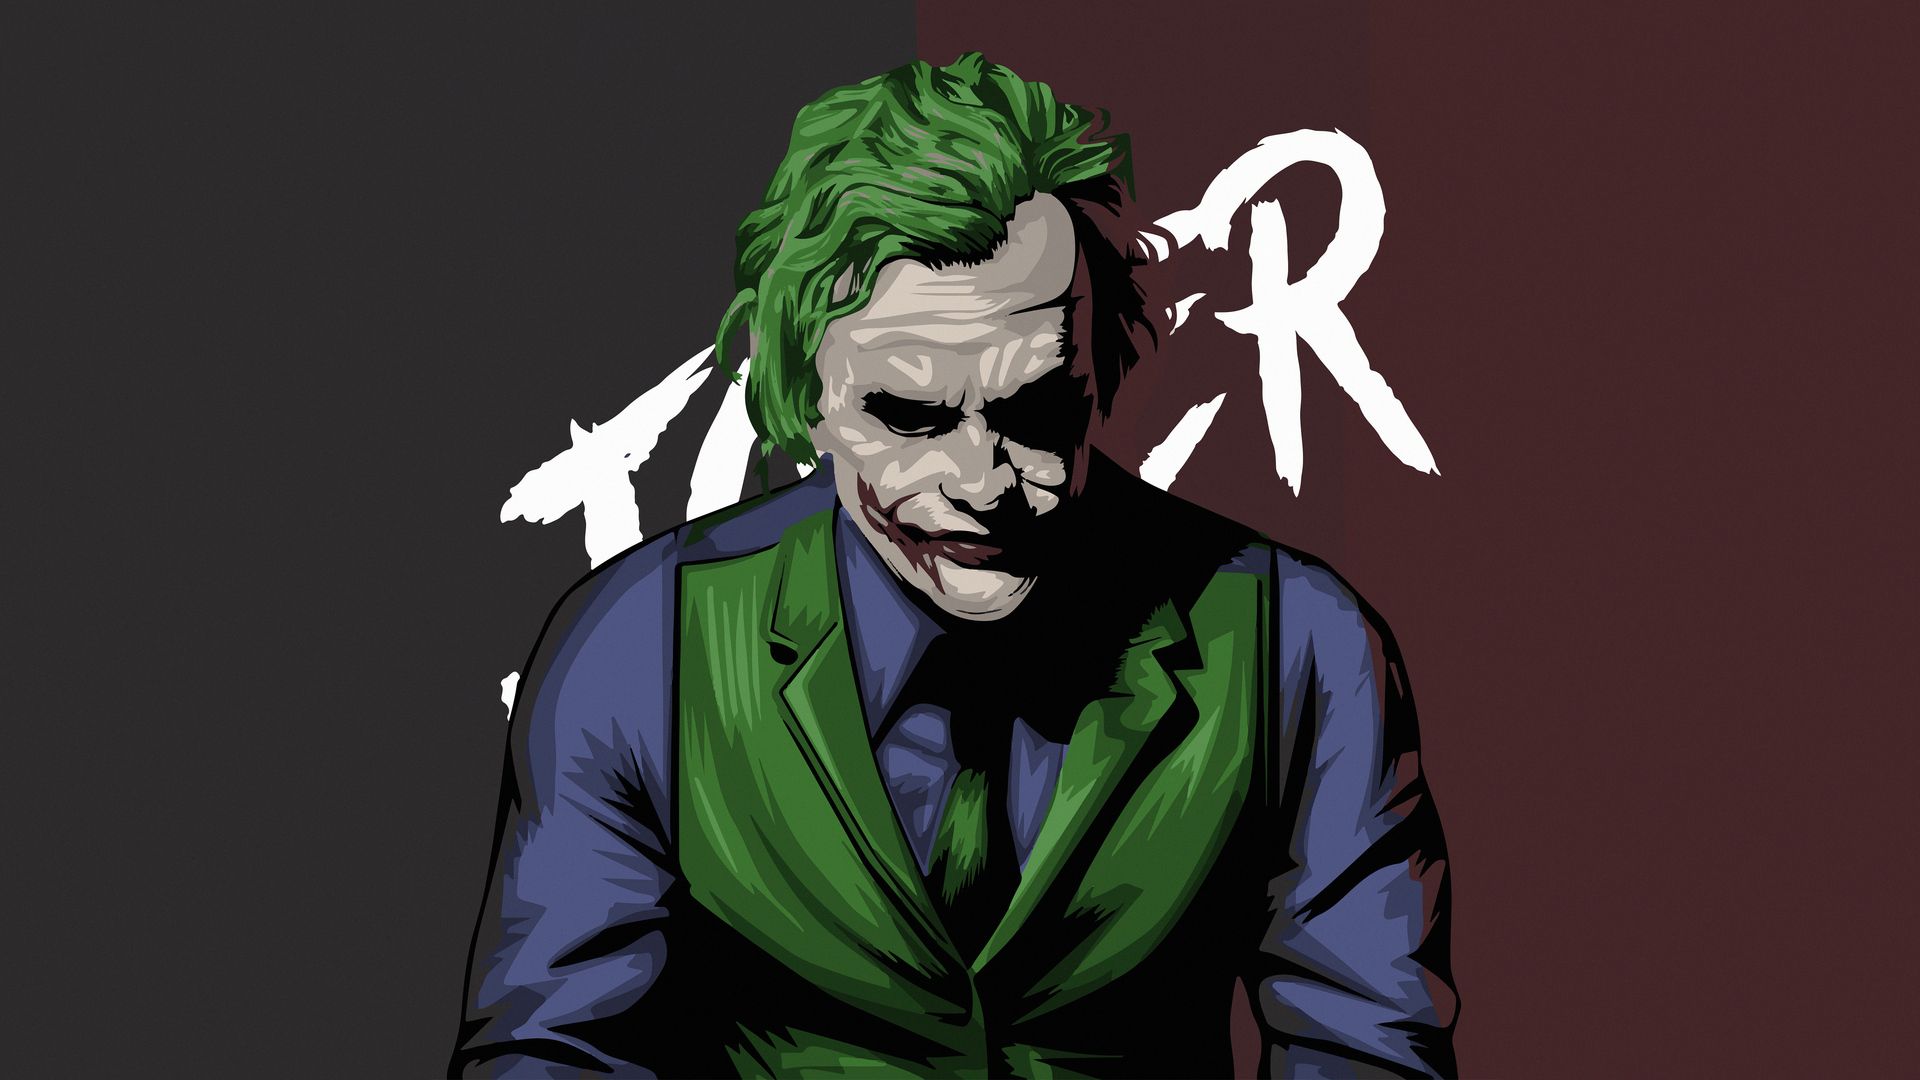 Ảnh Joker độc đáo - Bộ sưu tập hình nền Joker độc đáo và đẹp mắt